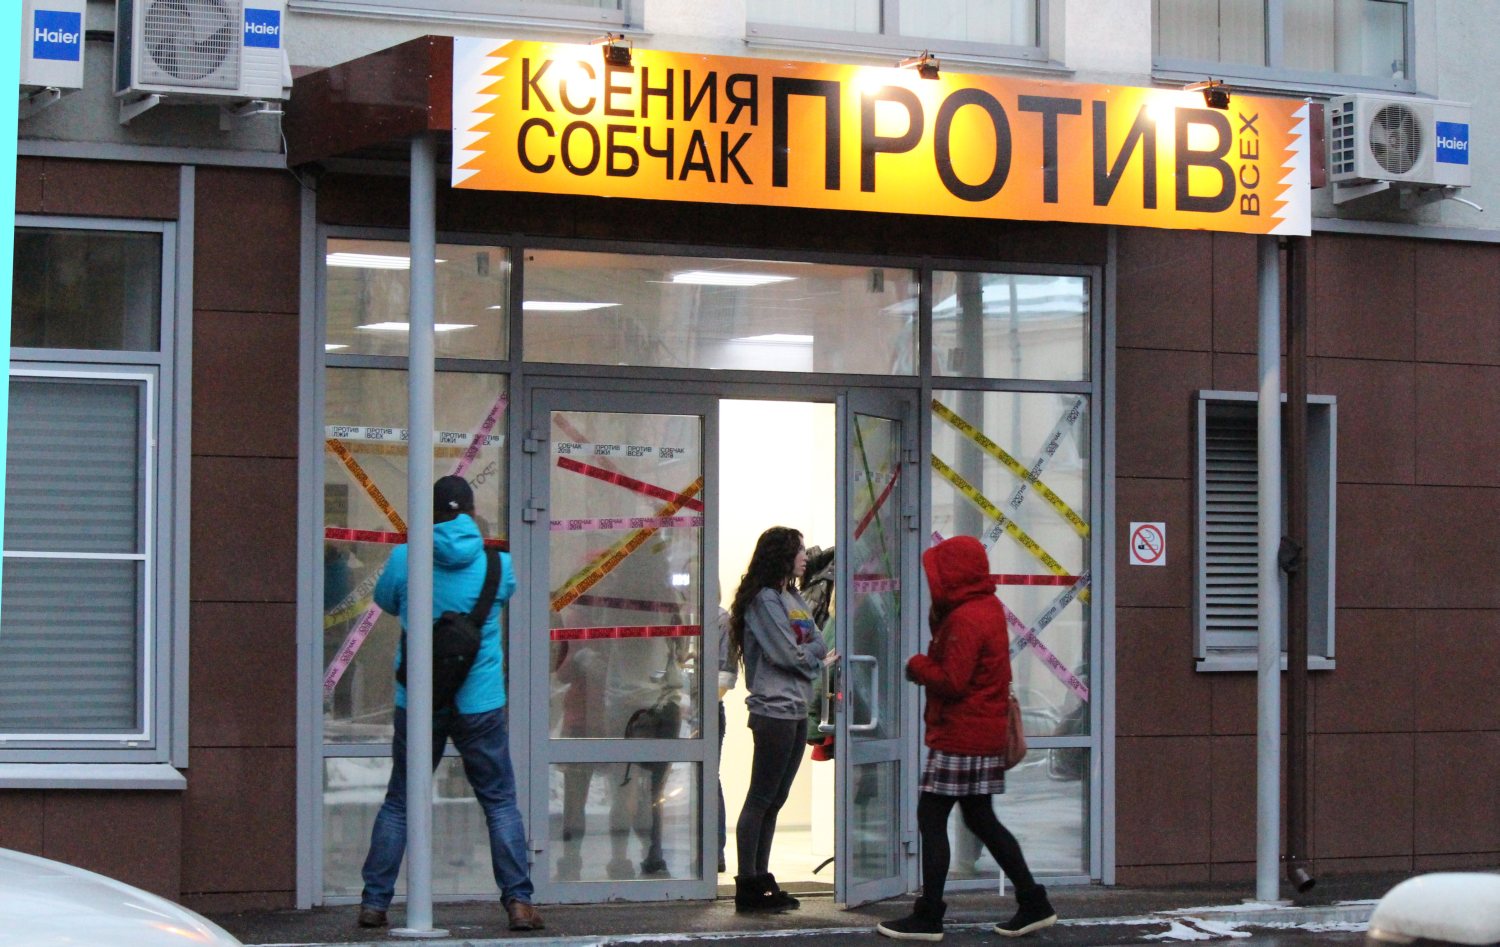 Ксения Собчак открыла предвыборный штаб в Нижнем Новгороде (ФОТО) - фото 2